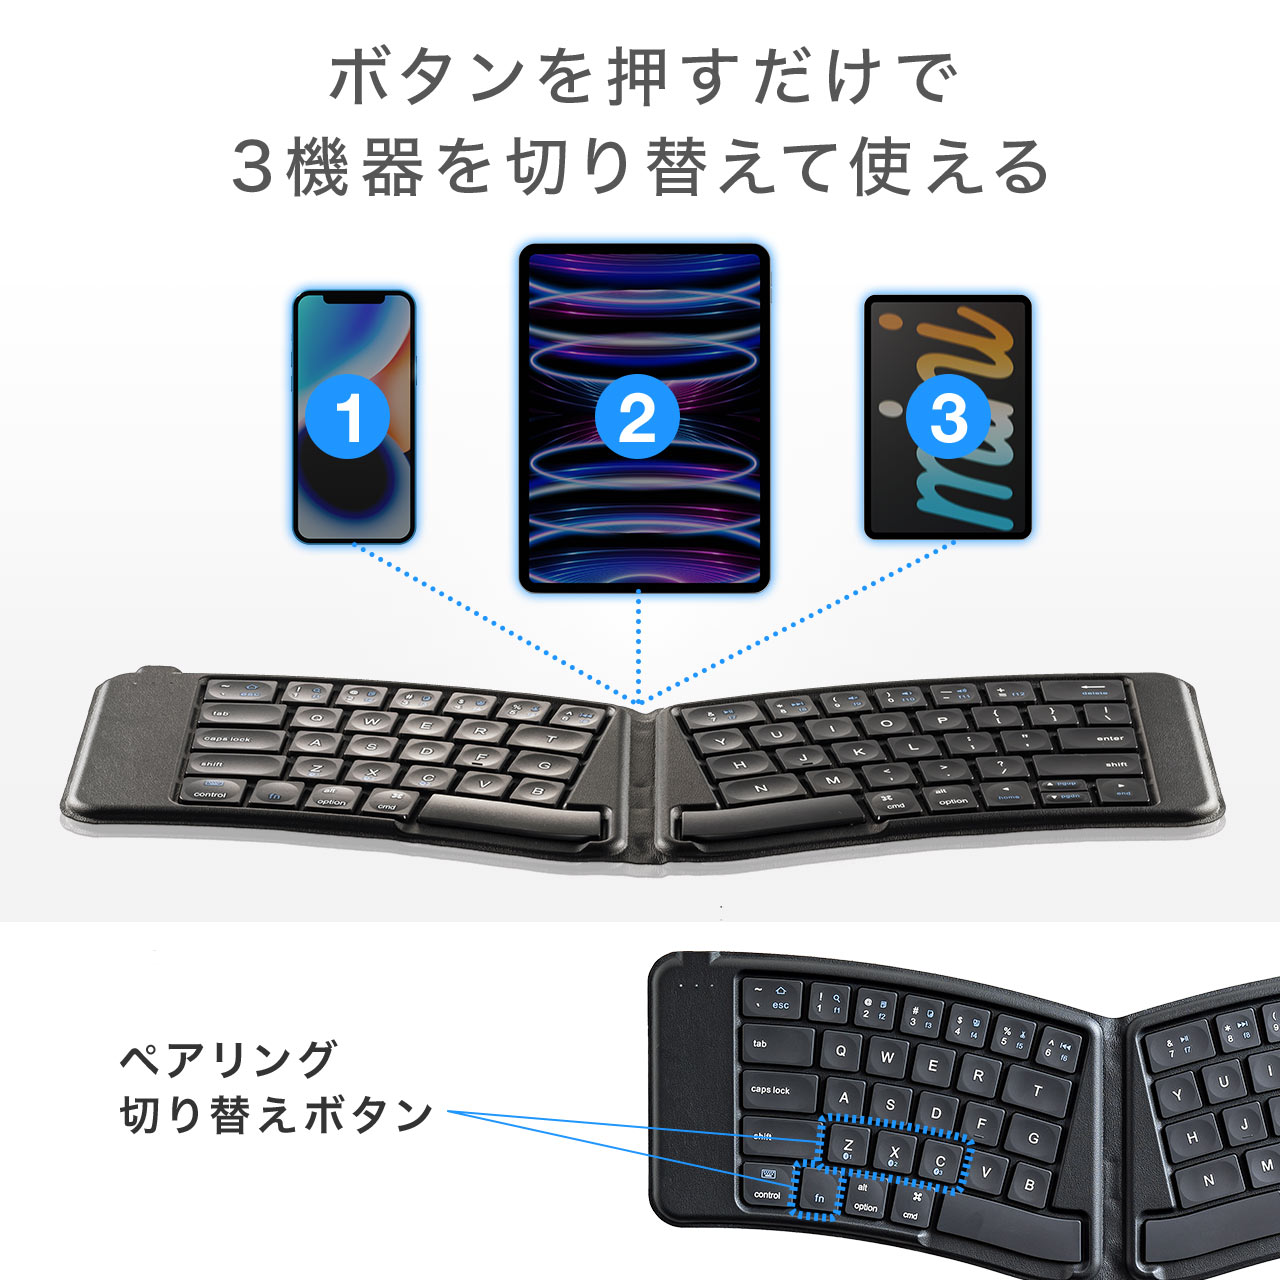 ワイヤレスキーボード Bluetoothキーボード エルゴデザイン iPhone・iPad対応 英字配列 Bluetooth5.1 充電式 400-SKB076